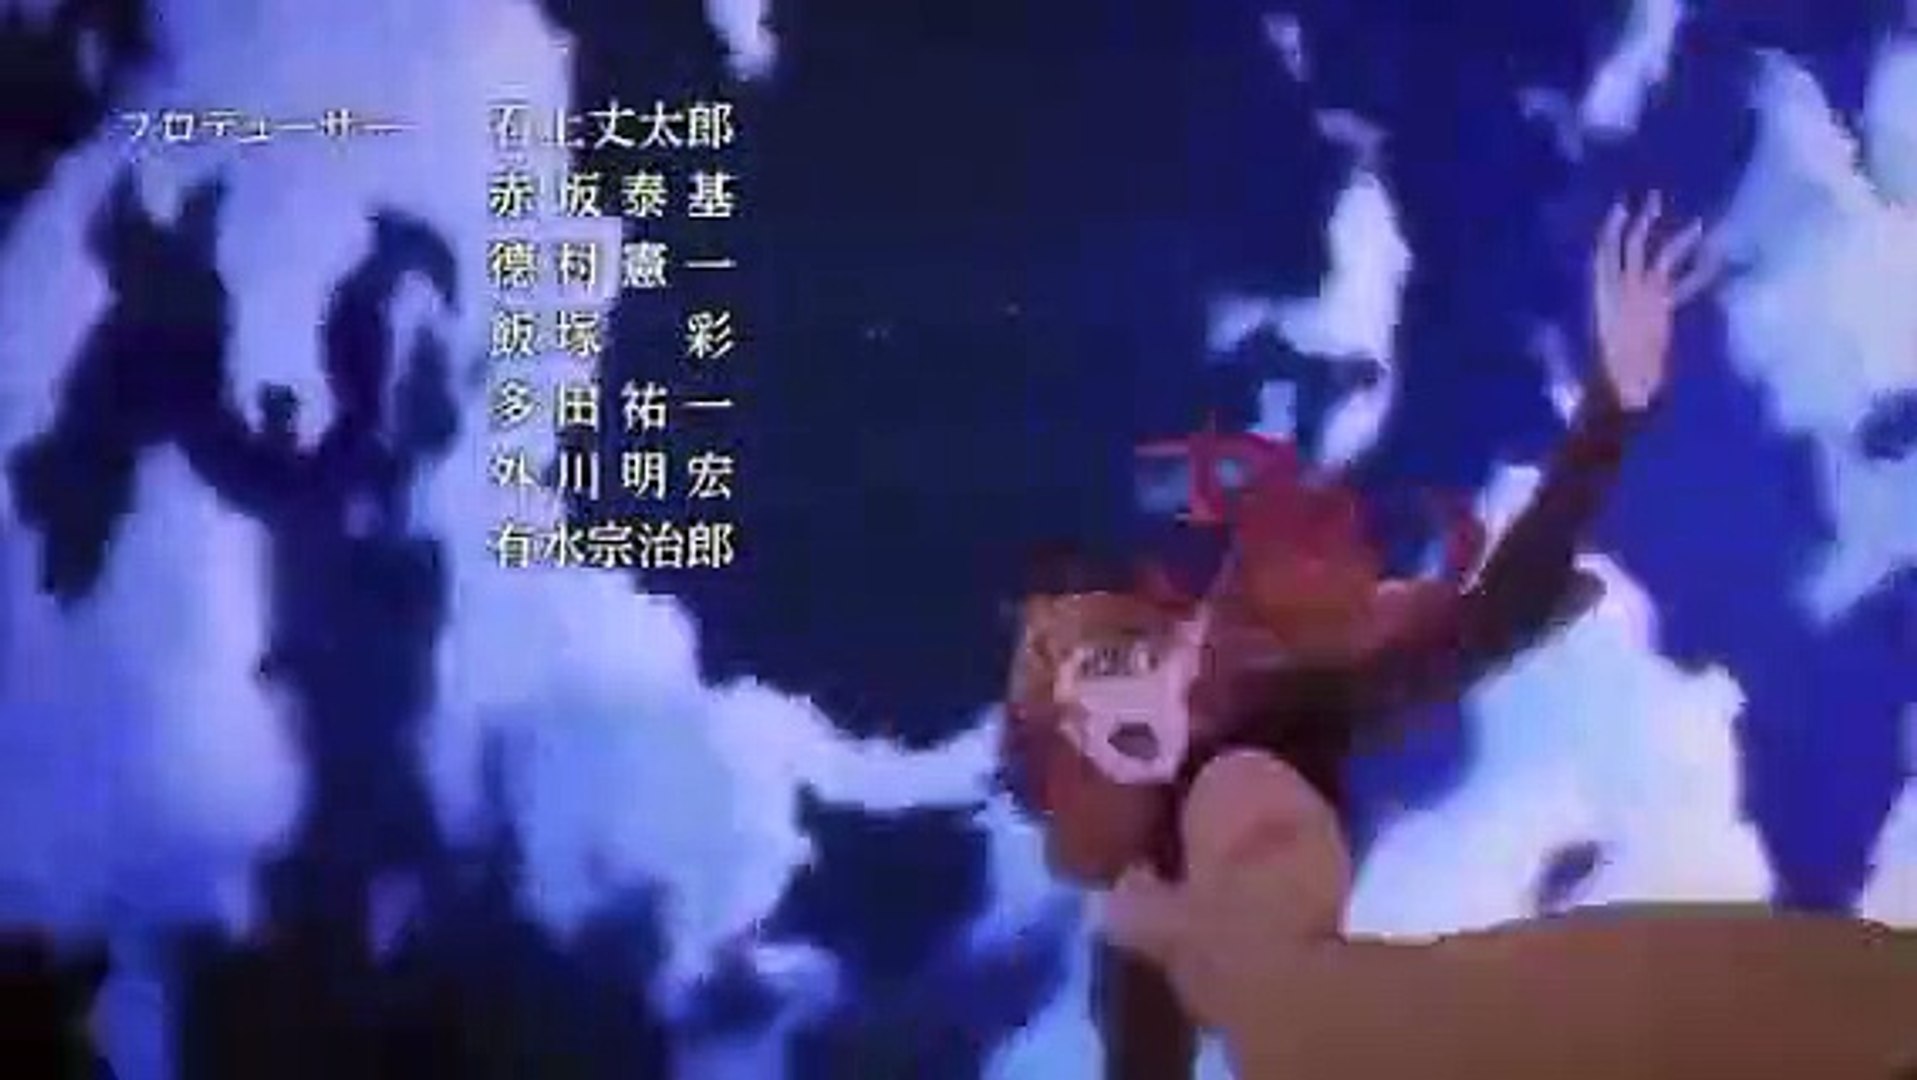 AnimesTC] Isekai Ojisan - 06 (1080p).mp4 on Vimeo